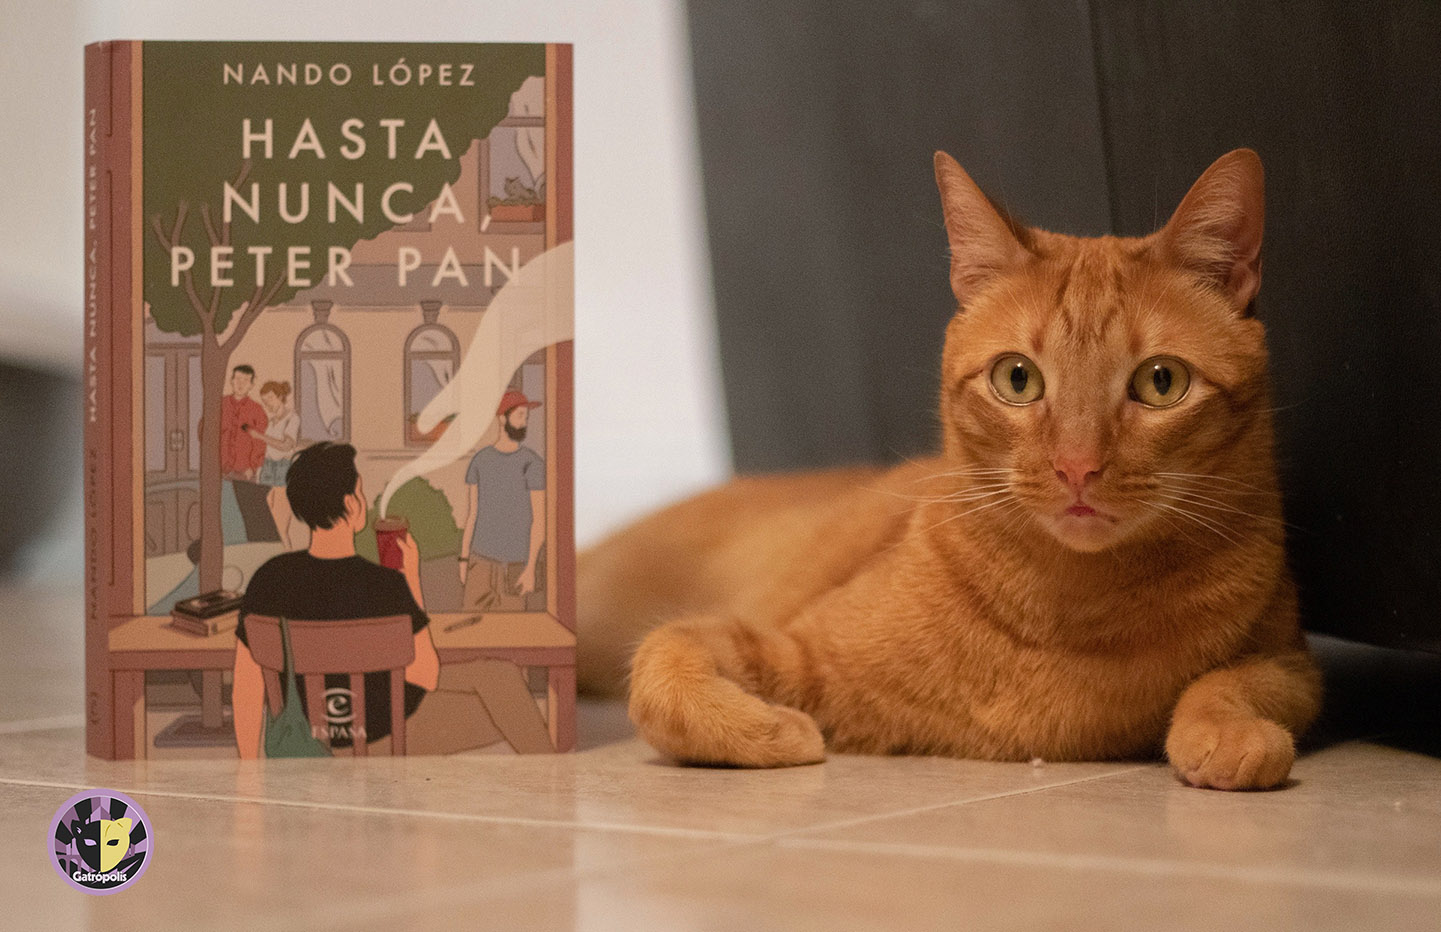 Nando López: “Esta es una novela de atreverse a vivir y tomar las riendas de nuestras vidas”